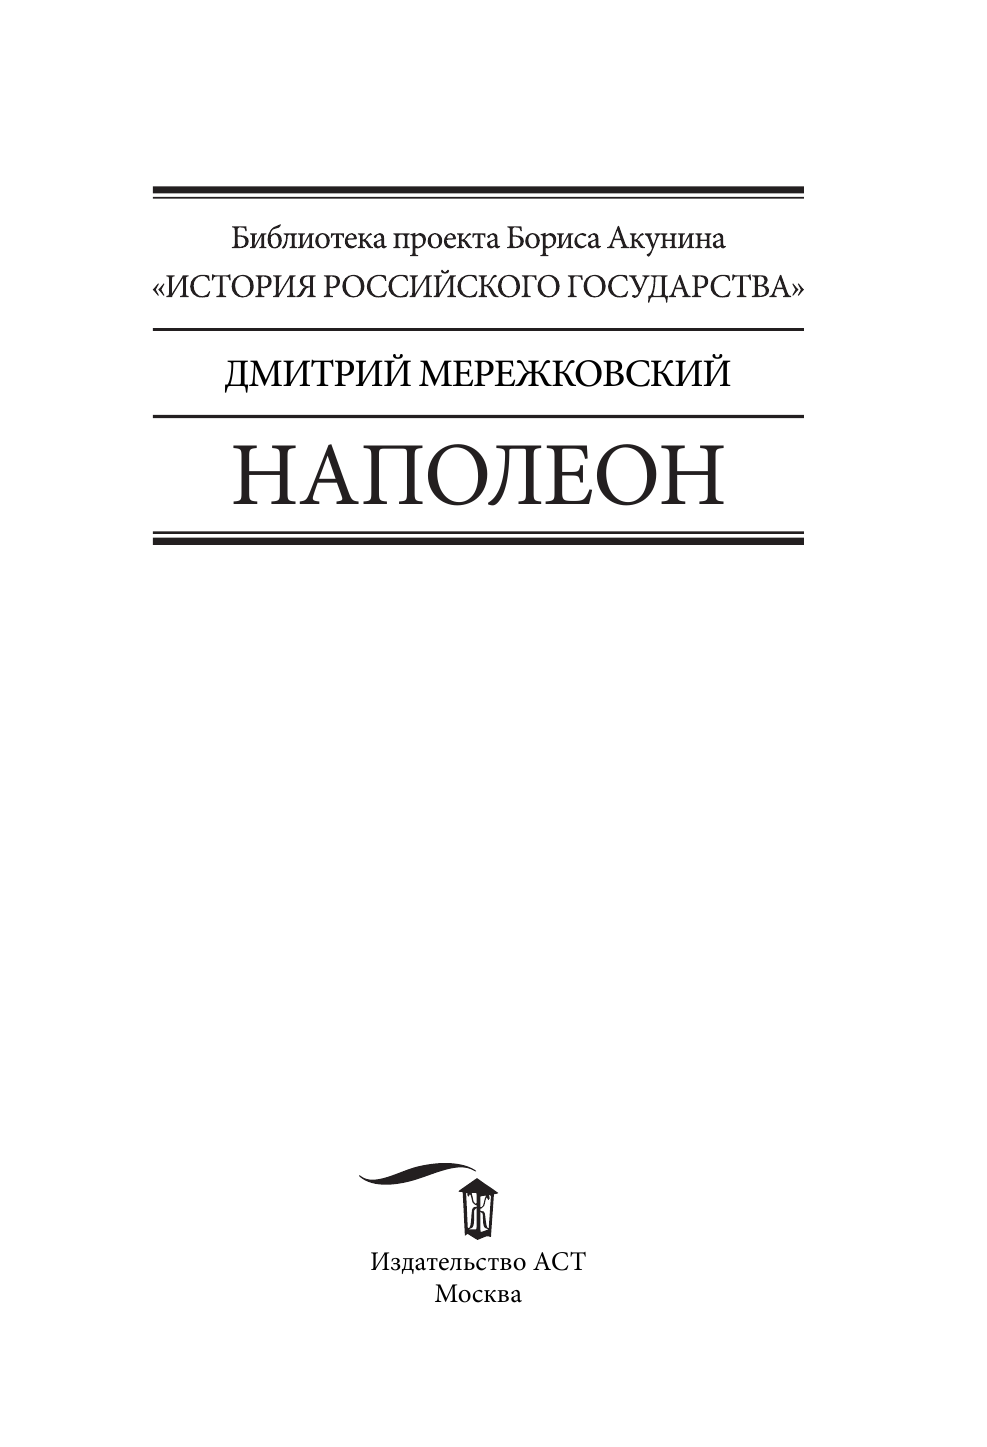 Мережковский Дмитрий Сергеевич Наполеон - страница 2